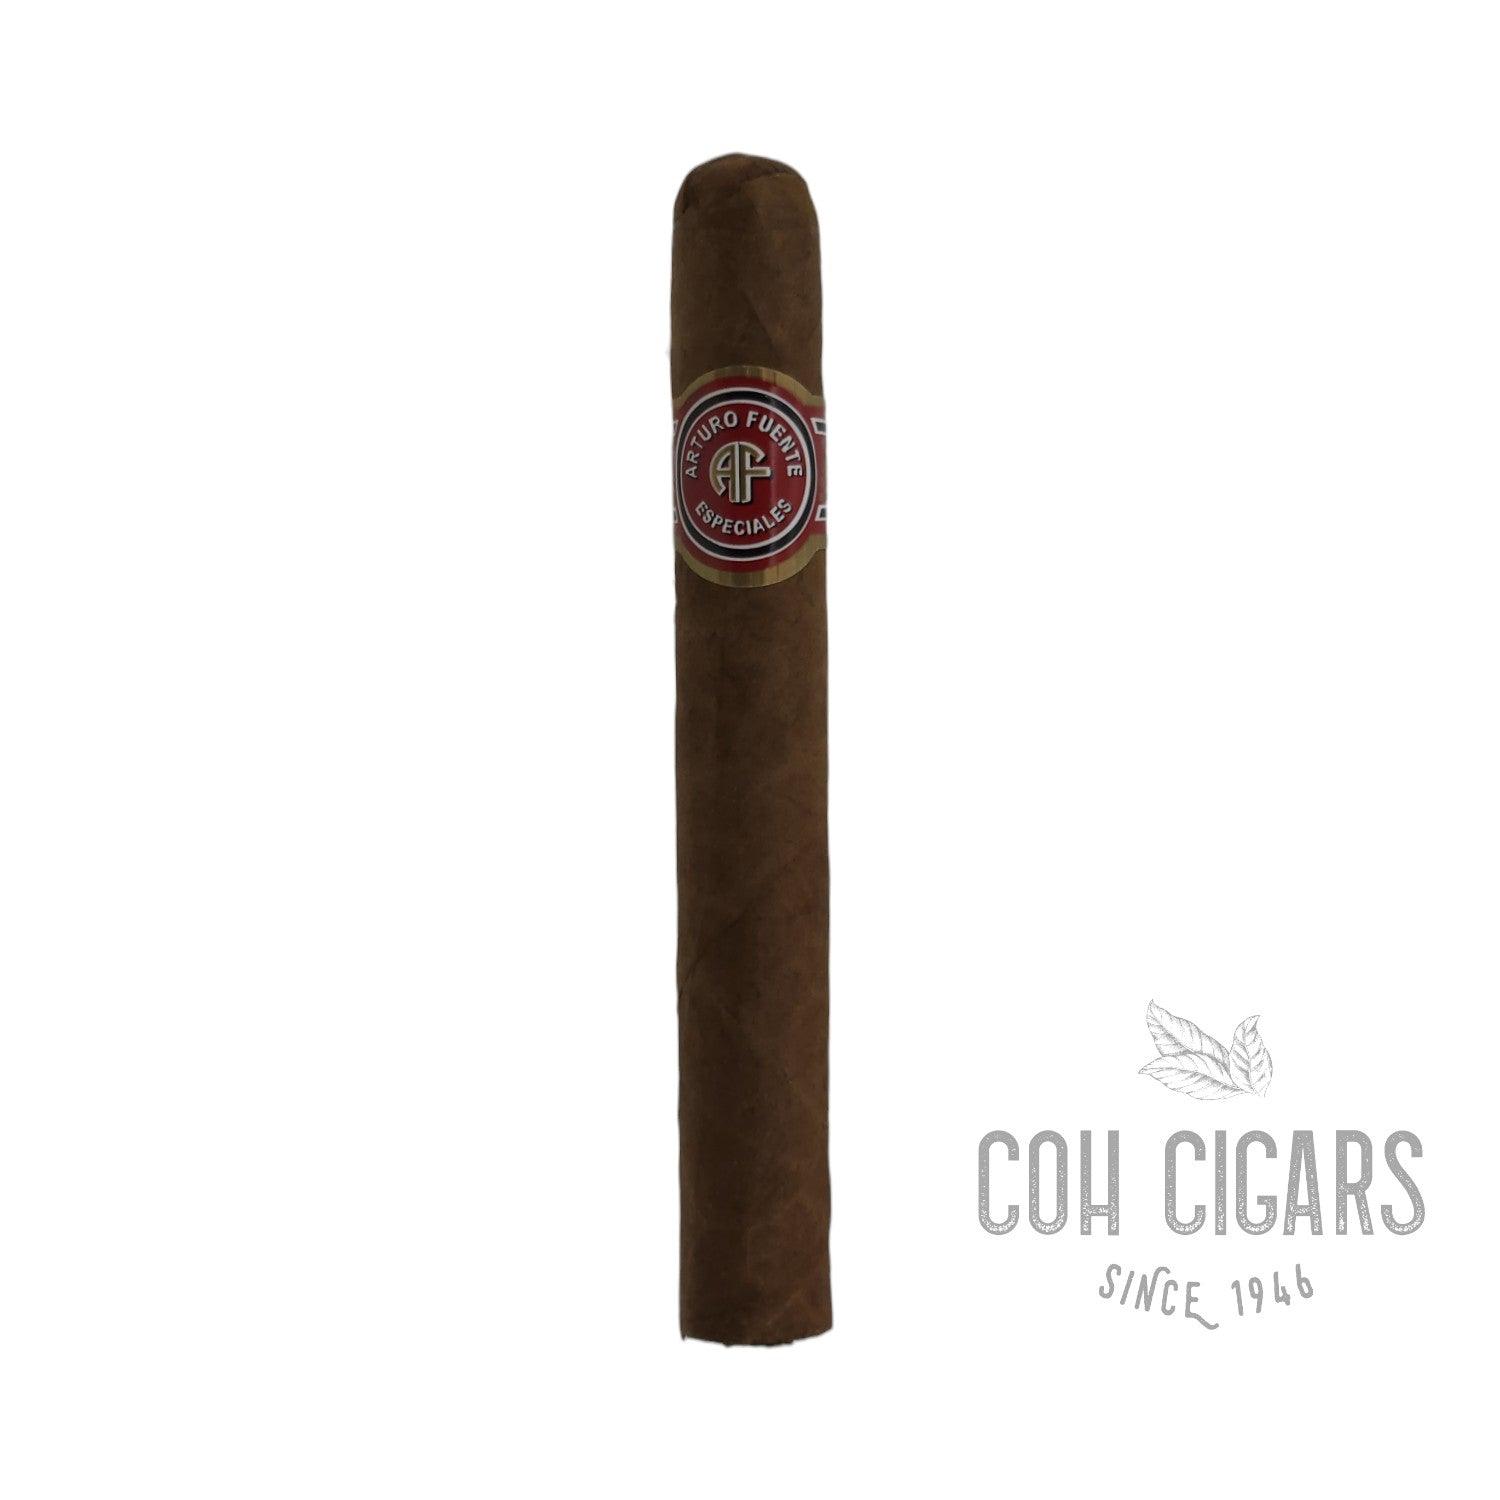 Arturo Fuente Cigar | Cazadores | Box 30 - HK CohCigars